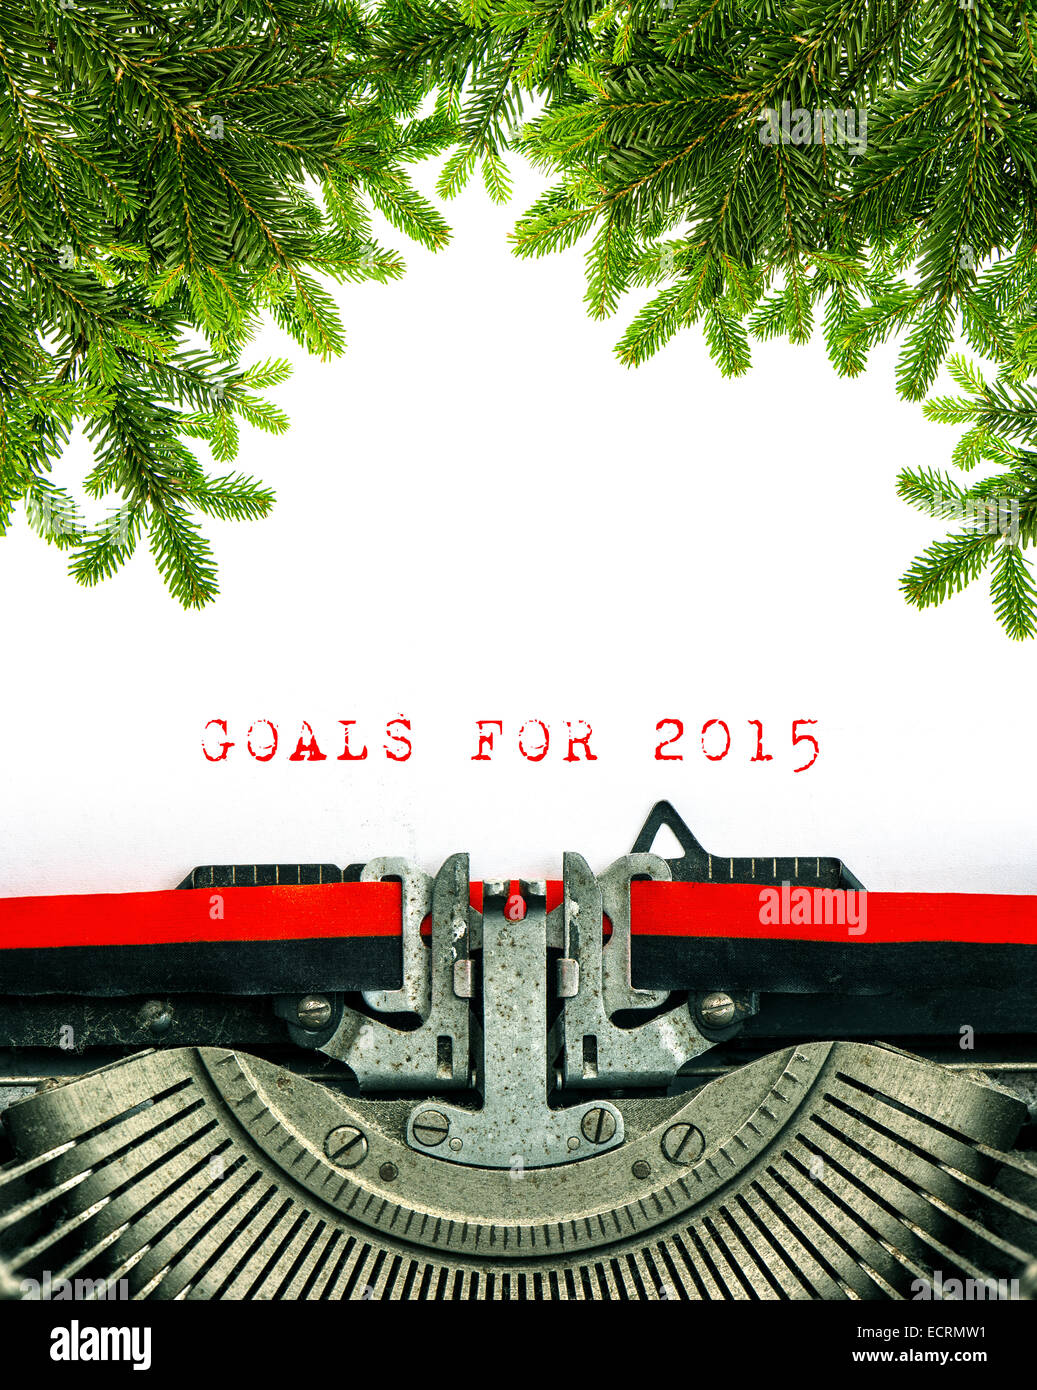 Alte Schreibmaschine mit Beispieltext Ziele für das Jahr 2015. Weihnachtsbaum Zweige Dekoration Stockfoto